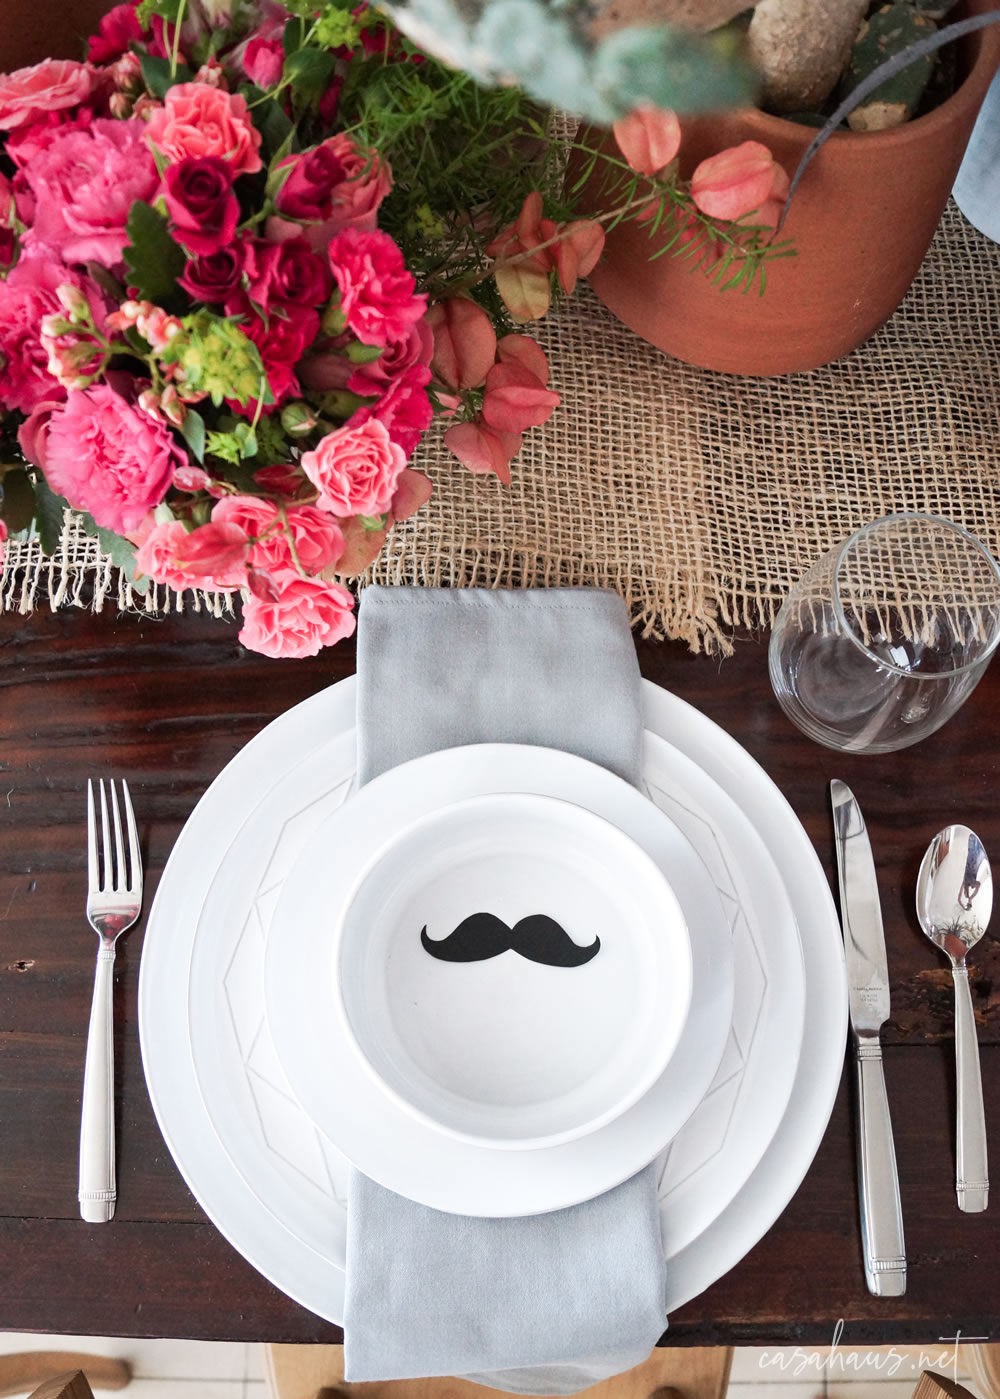 Platos puestos con bigote de papel, en mesa con cactus y flores rosas